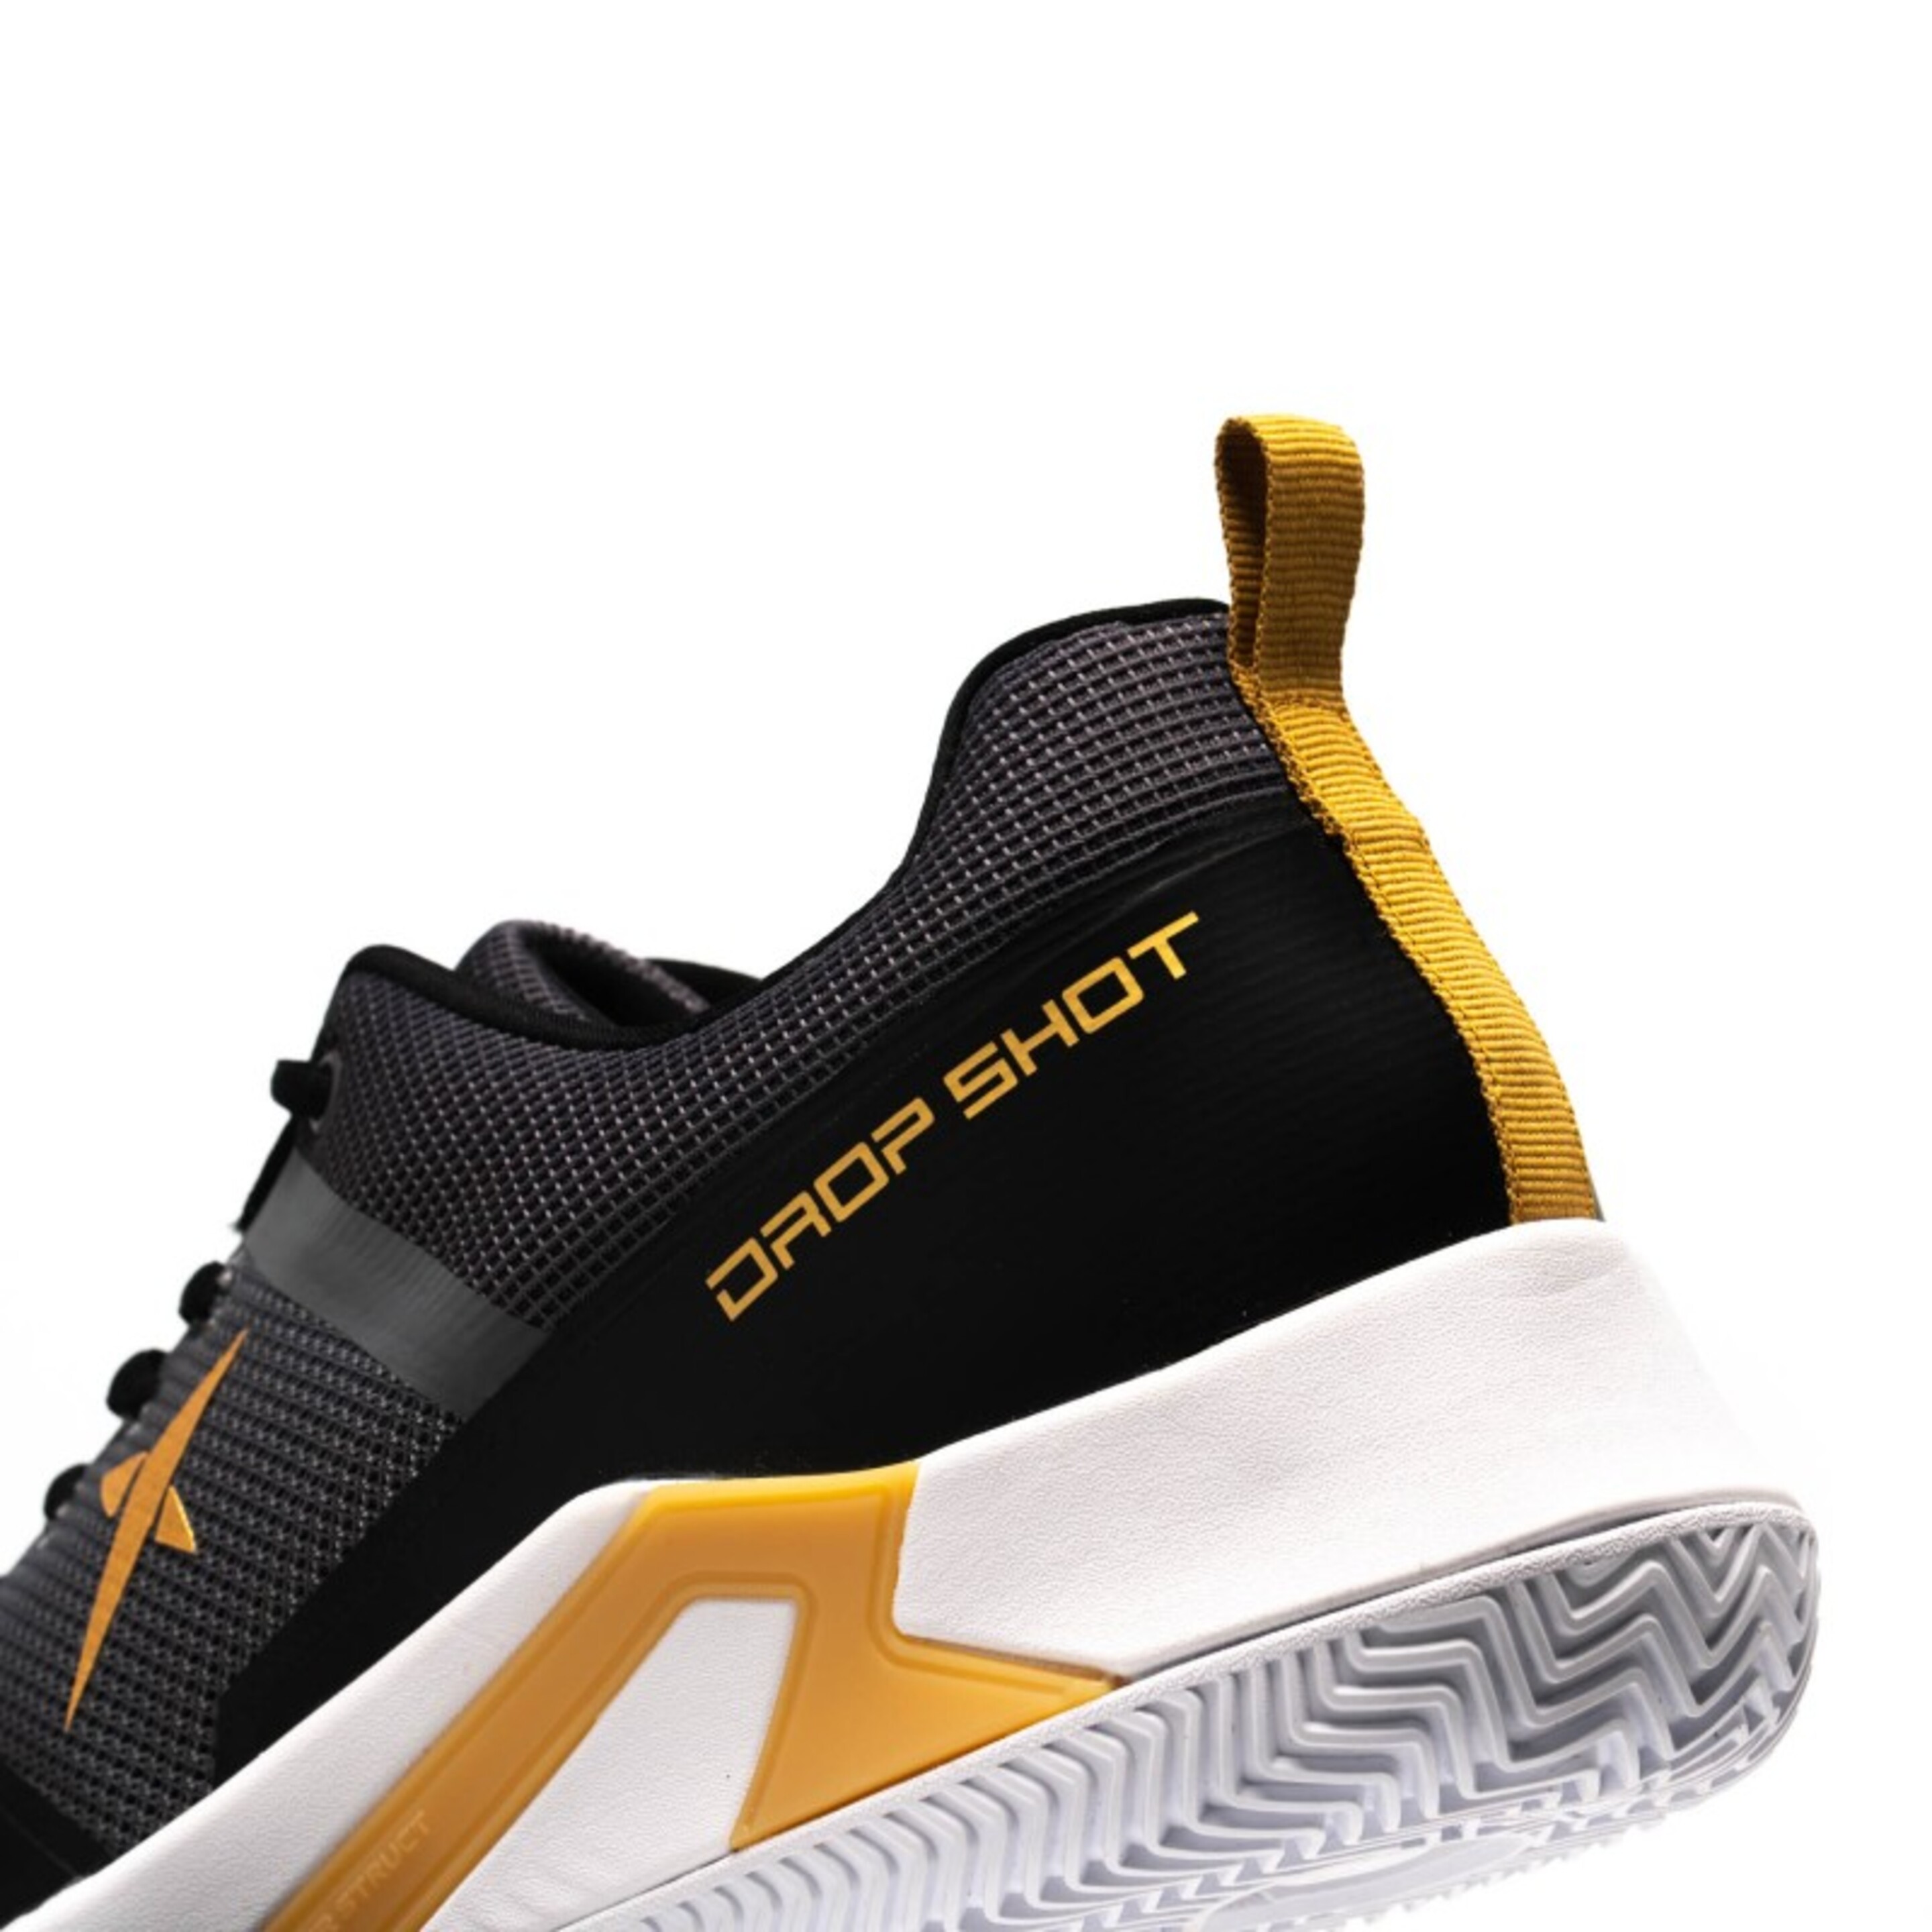 Drop Shot Dawa-g Xt Dz261010 Pretos E Dourados - Sapatos Drop Shot Dawa-G XT: aderência, ventilação e durabilidade para o jogador de remo. | Sport Zone MKP